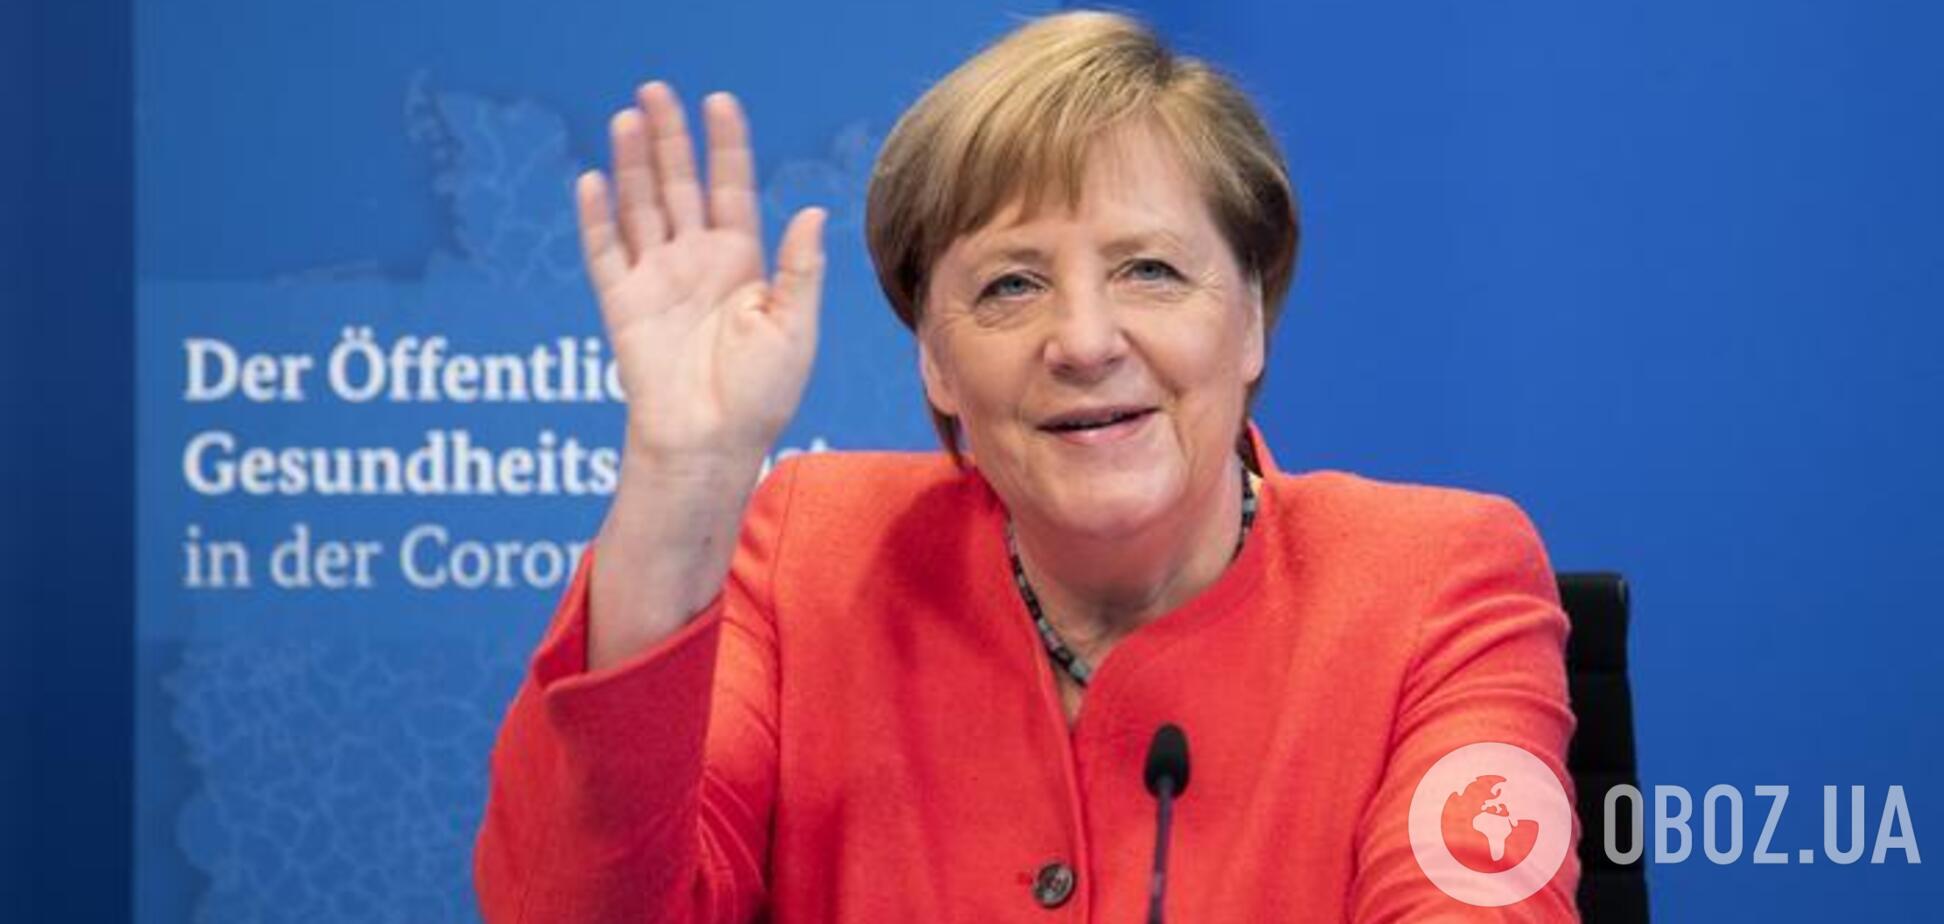 Меркель отвергла предложение Байдена отказаться от патентов на вакцины, а Путин его похвалил